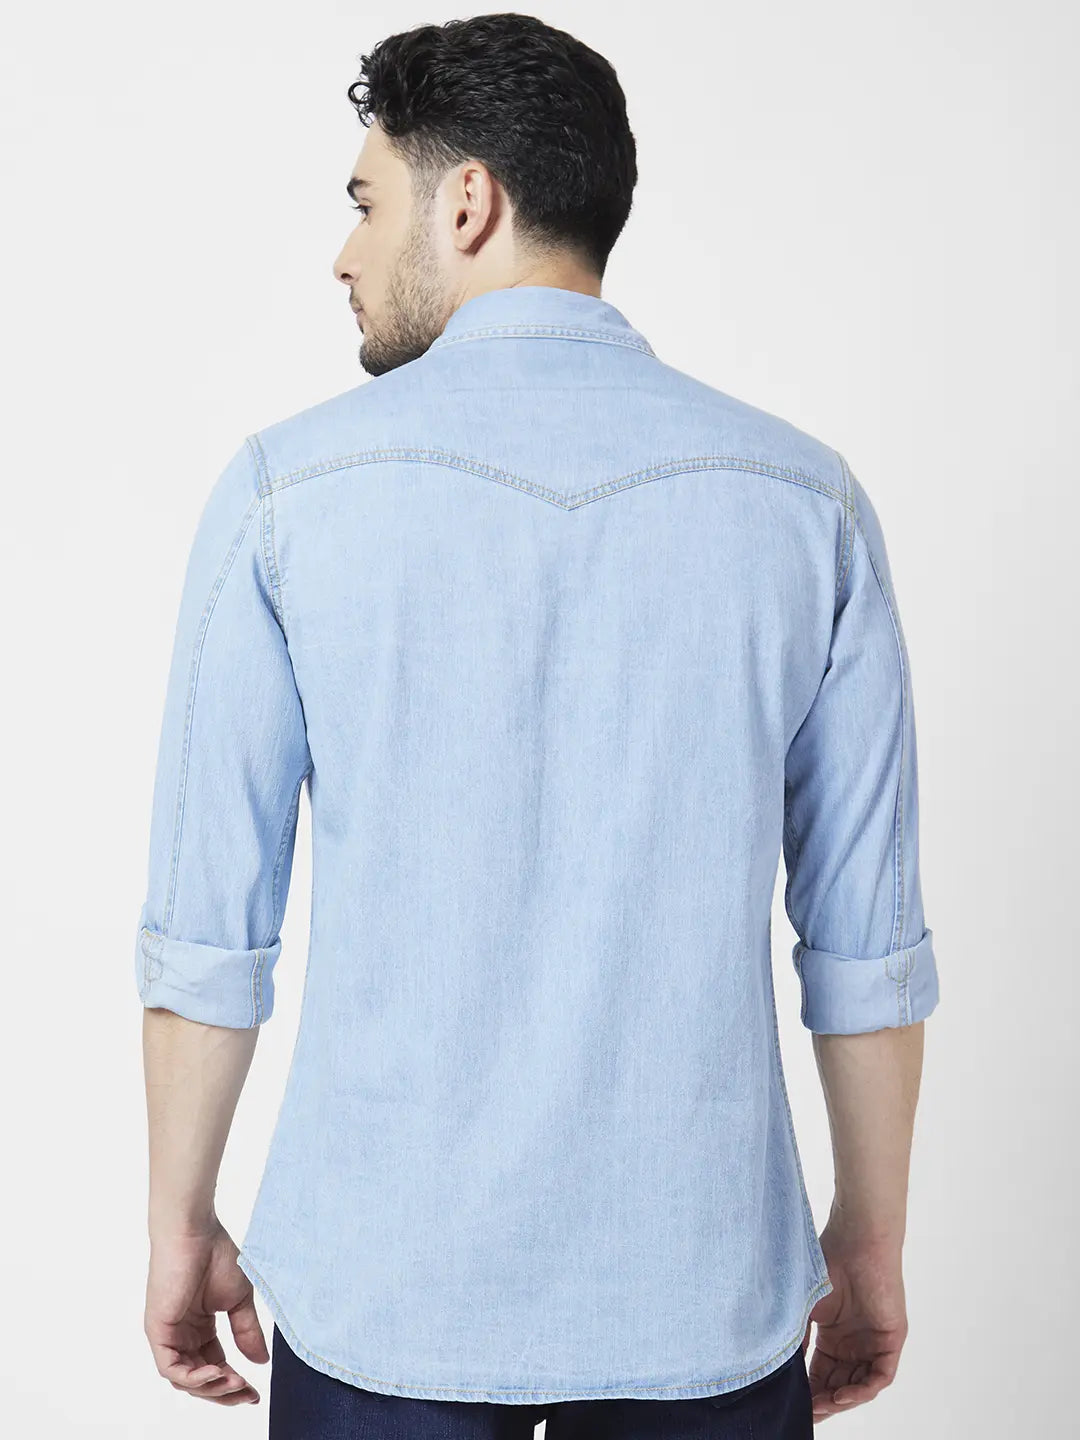 Men's Mandarin Collar Light Wash Denim Shirt